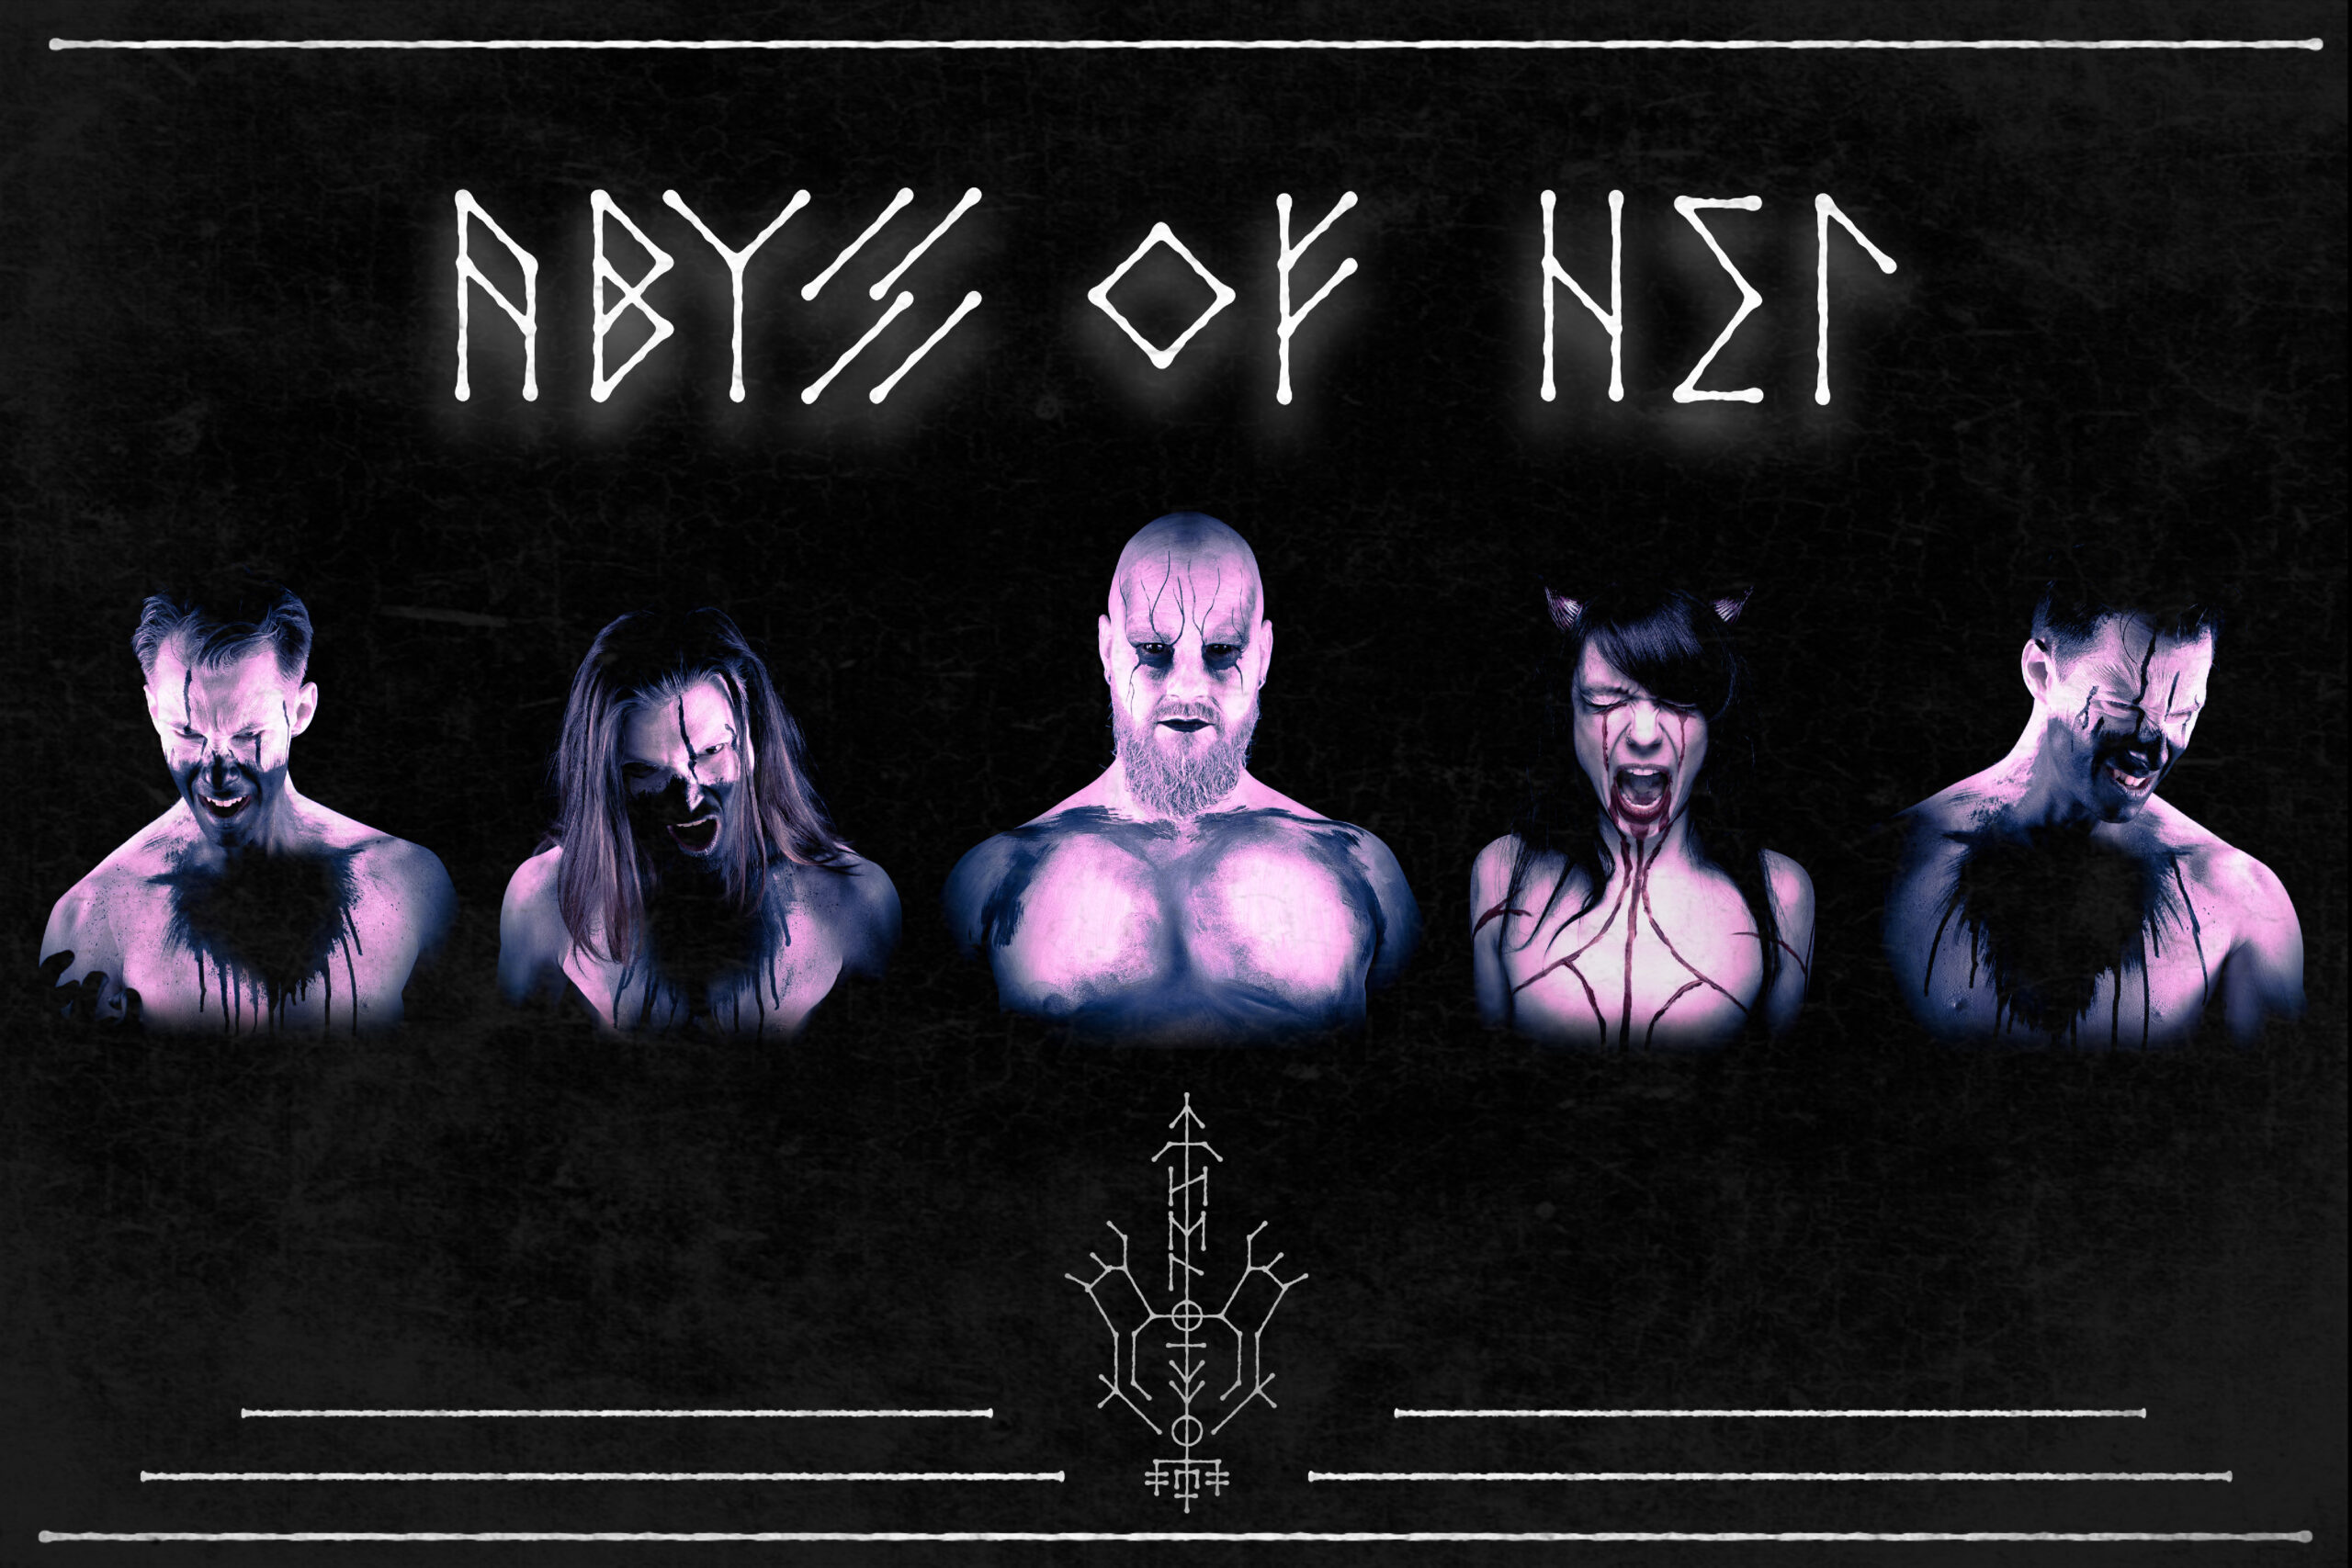 Gli Abyss Of Hel debuttano a fine anno con MDD